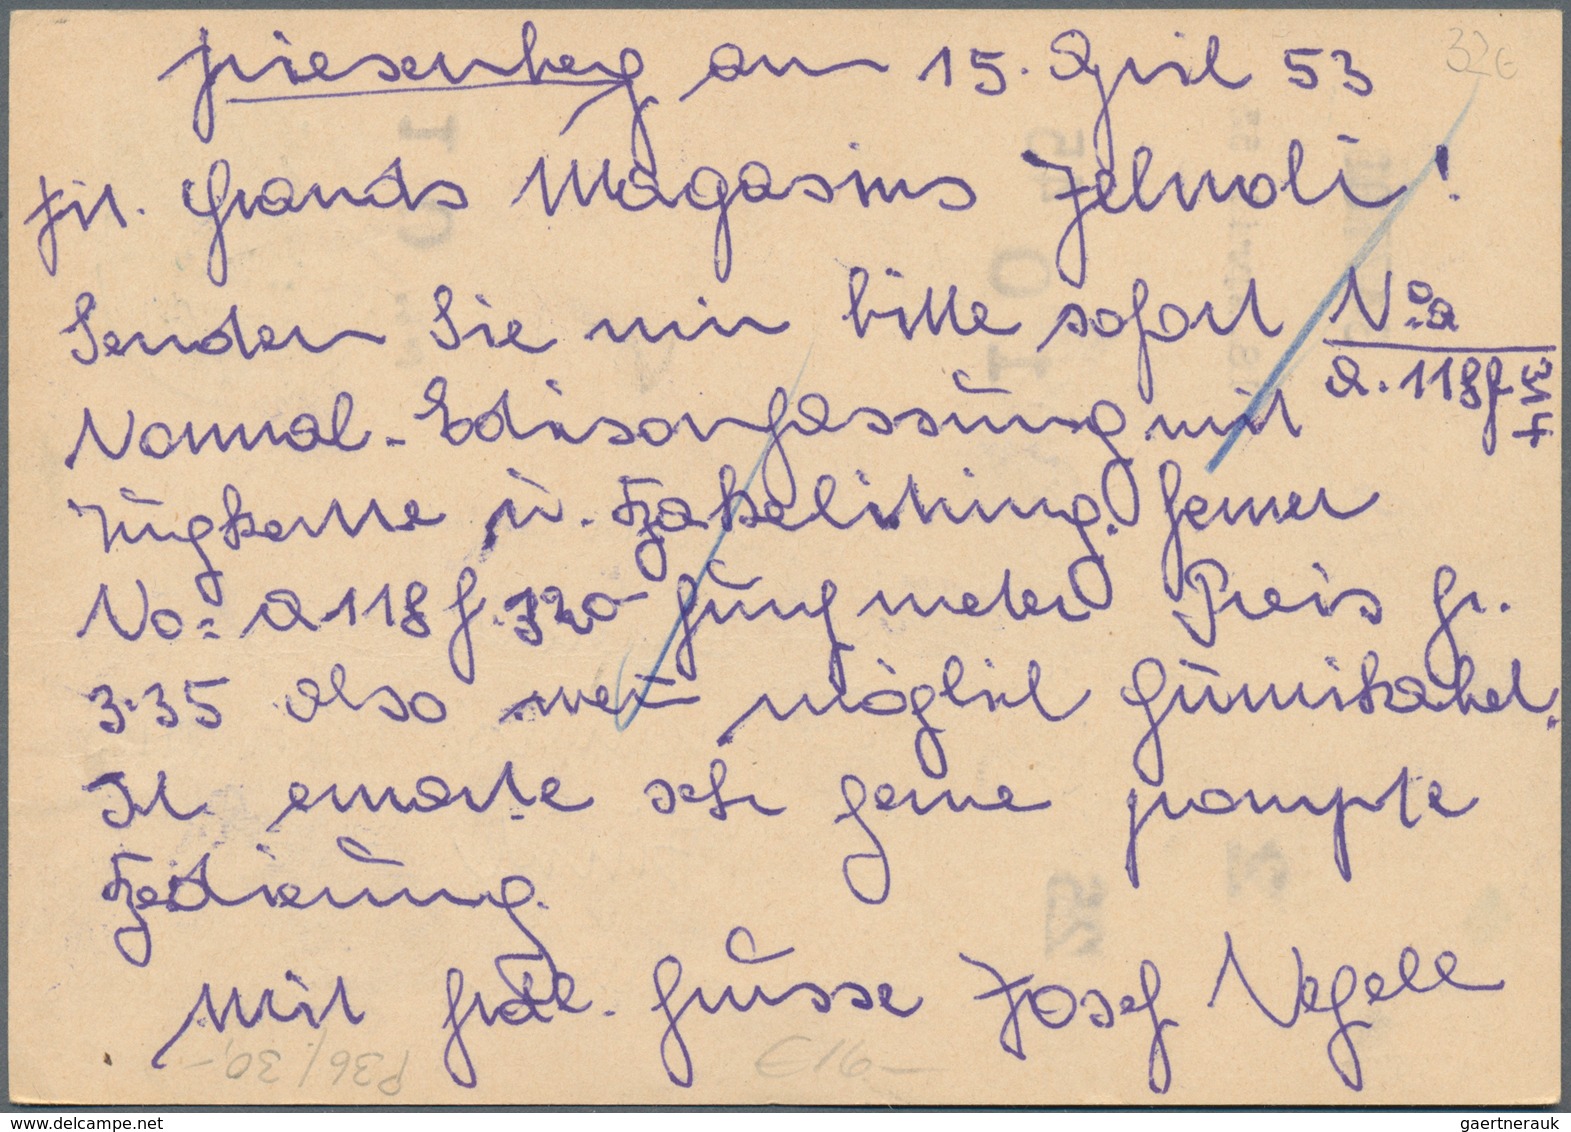 Liechtenstein - Ganzsachen: 1950, 10 Rp. Fürstenkrone mit Druckvermerk S.A.1949, alle 10 Bilder, mei